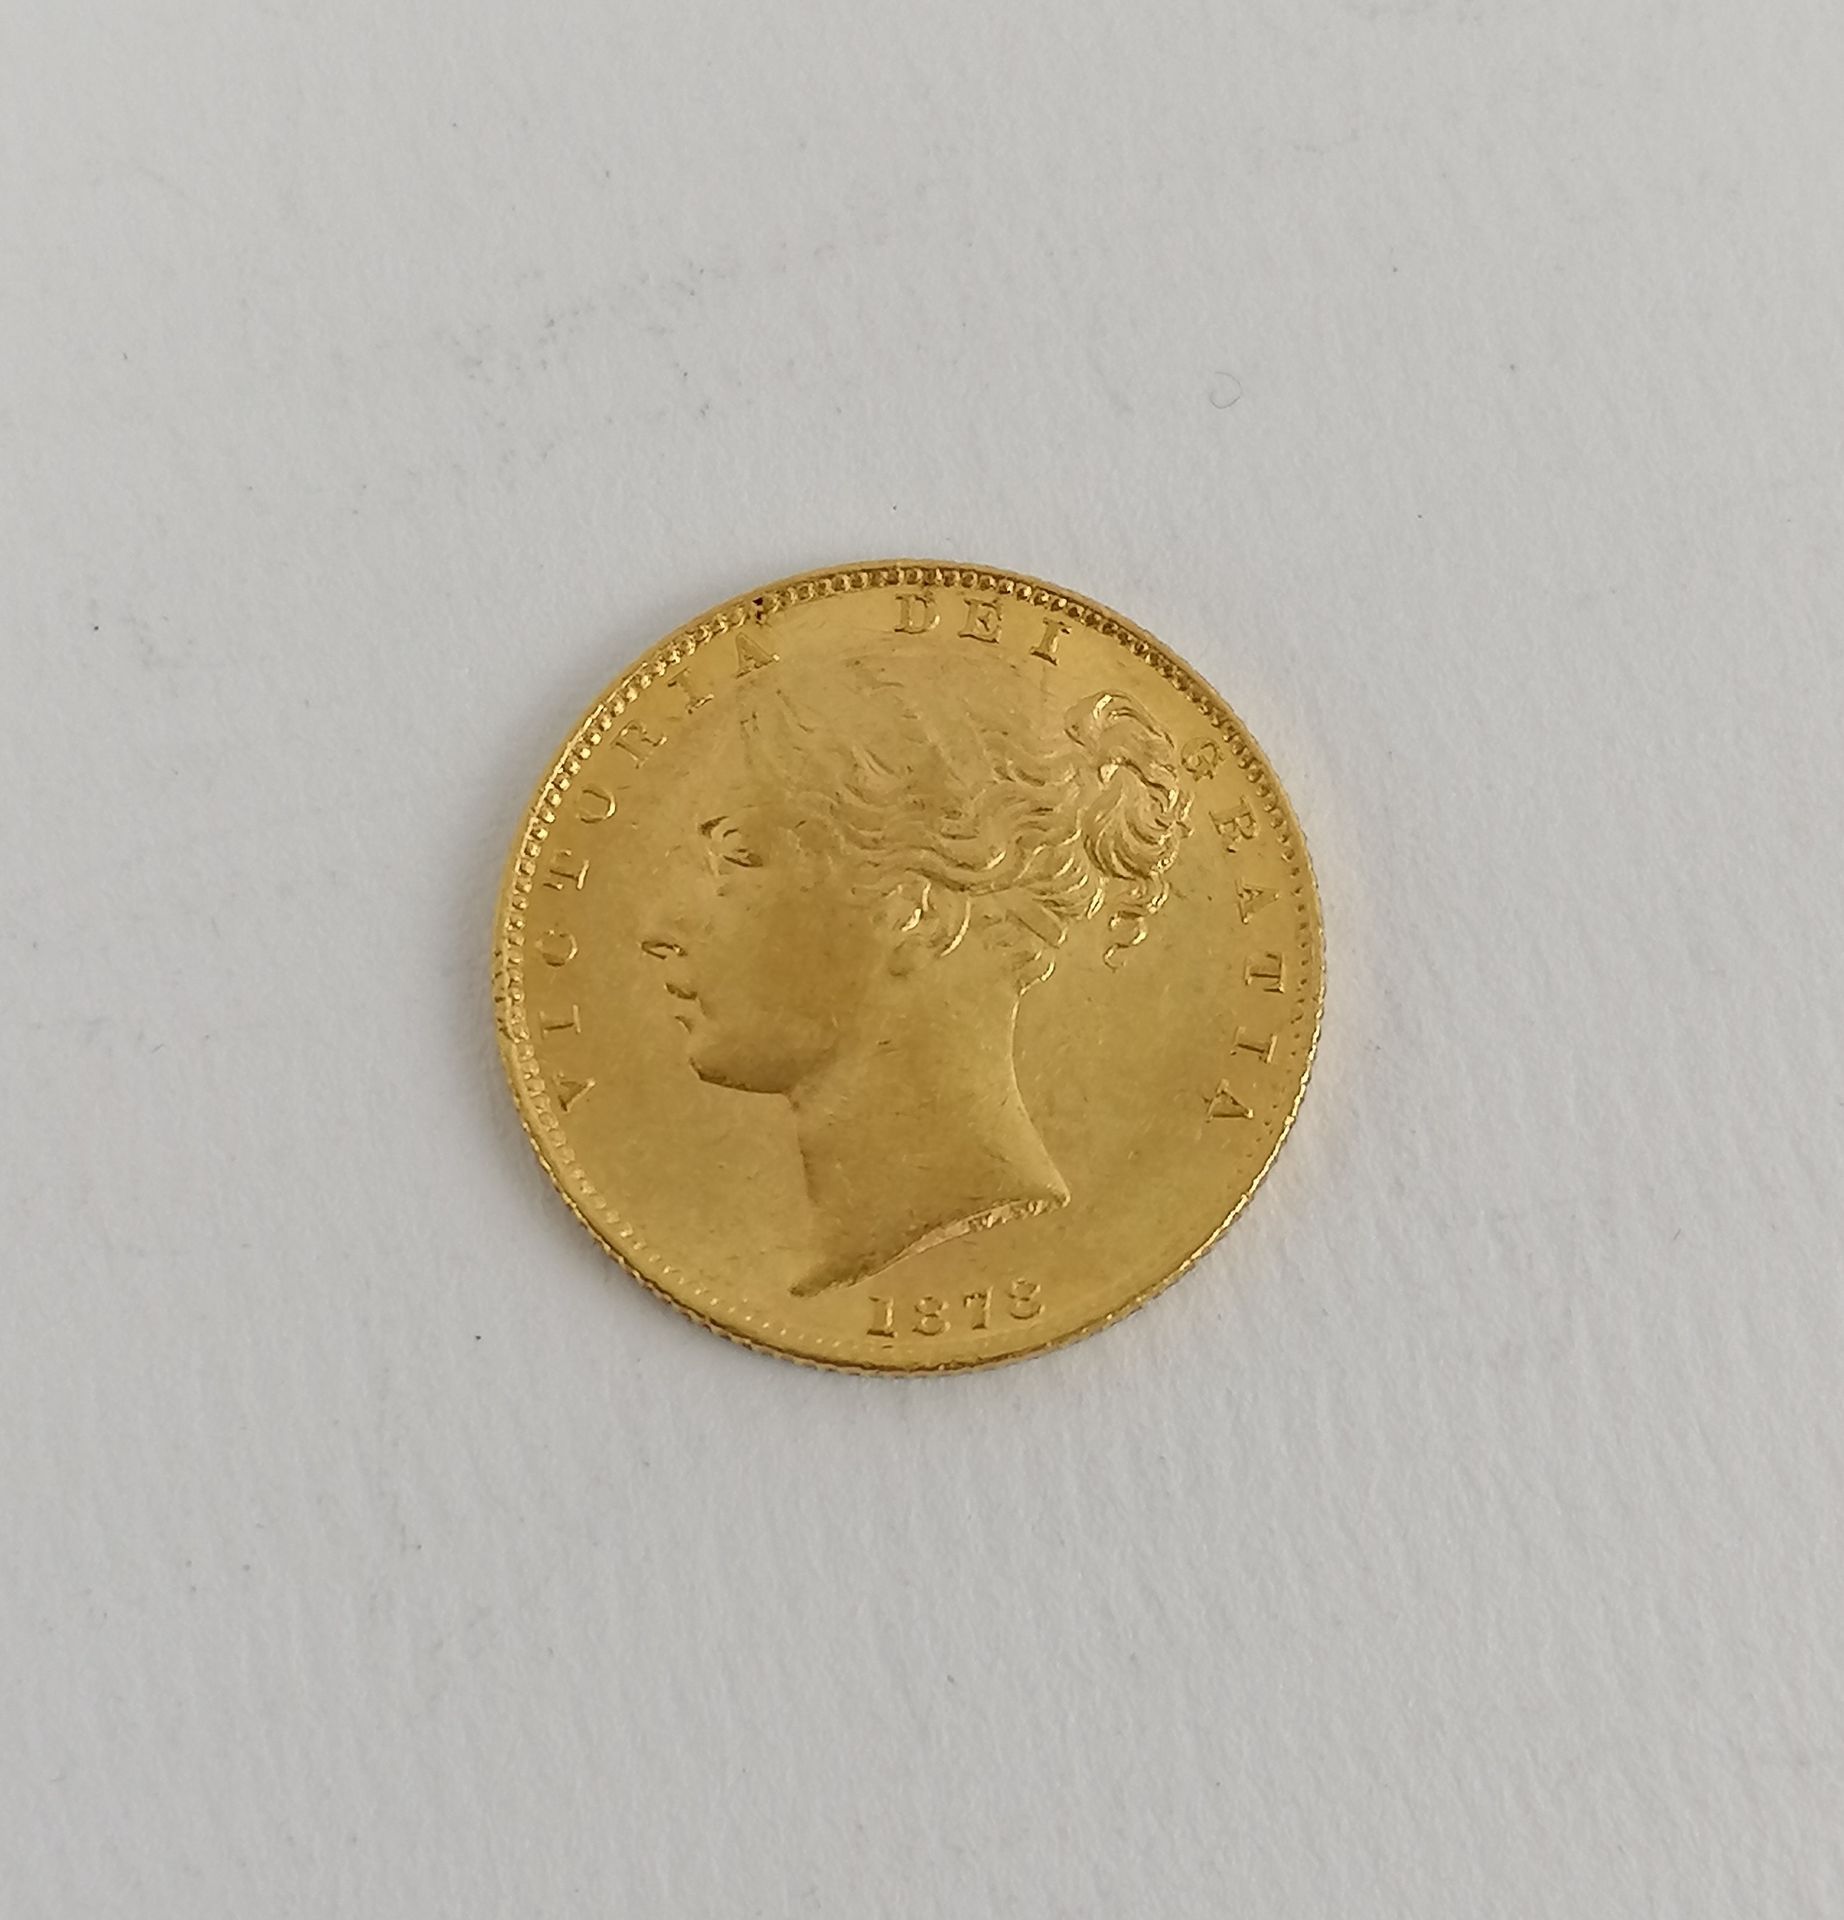 Null Eine Goldmünze Souverän Victoria jung Jahr 1878.
Gewicht: 8 g